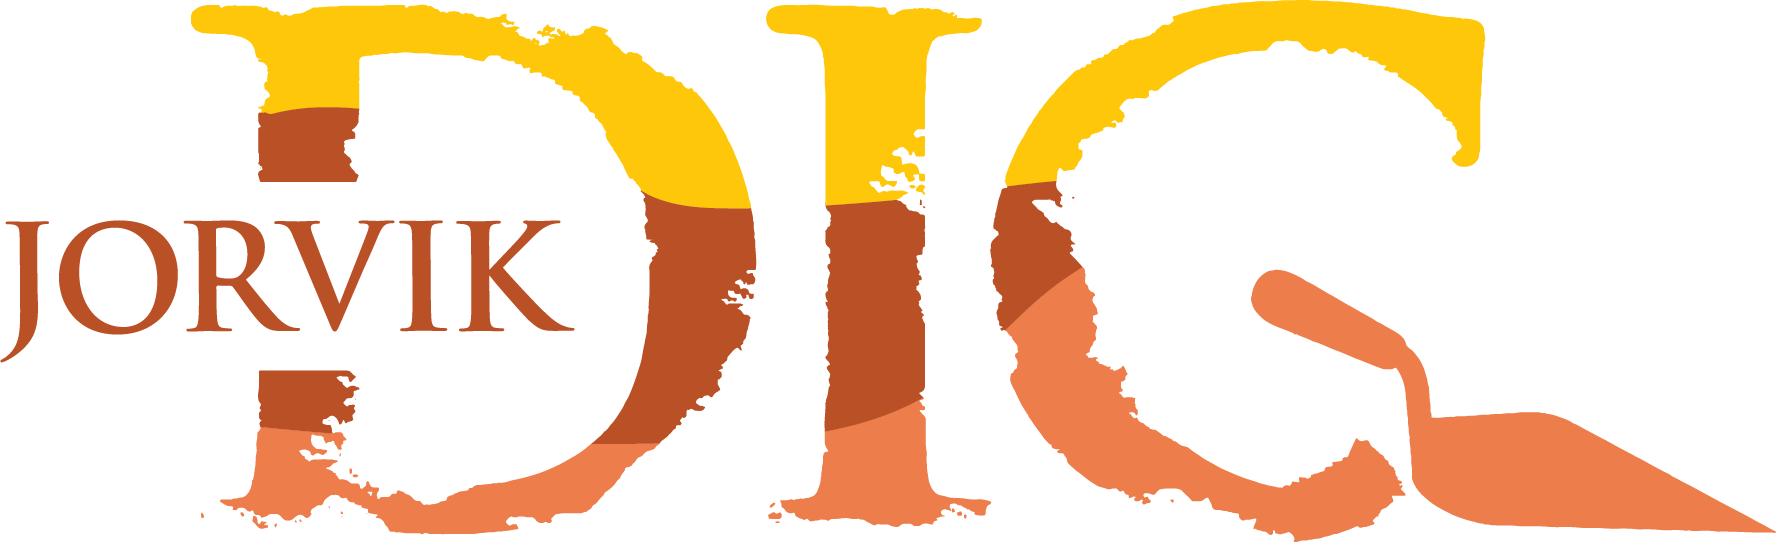 DIG logo